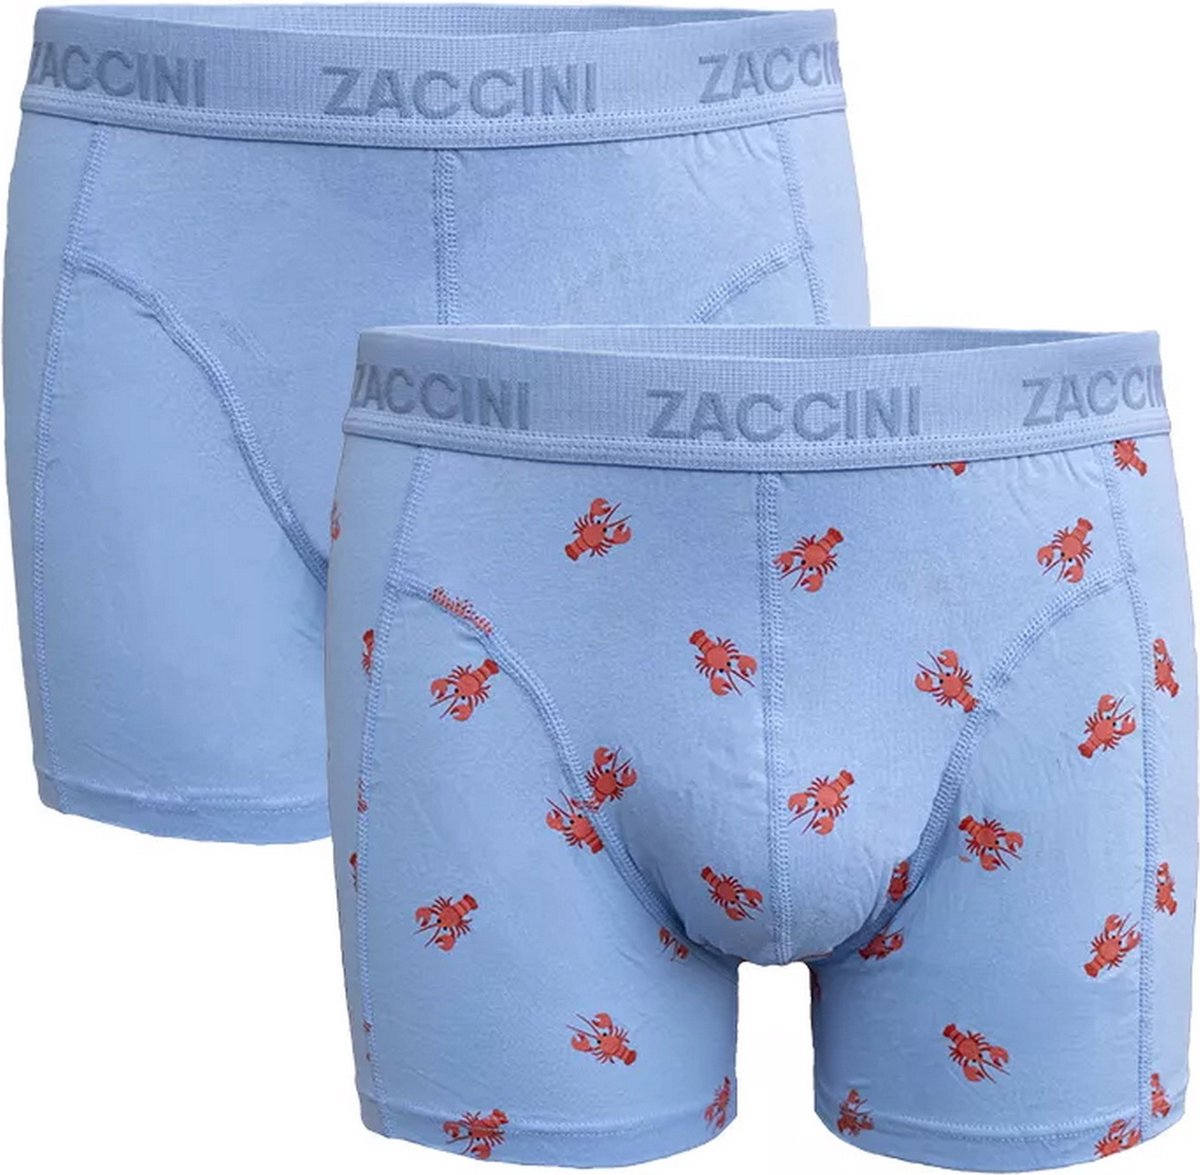 Zaccini - 2-Pack Boxershorts - Kreeft - Blauw